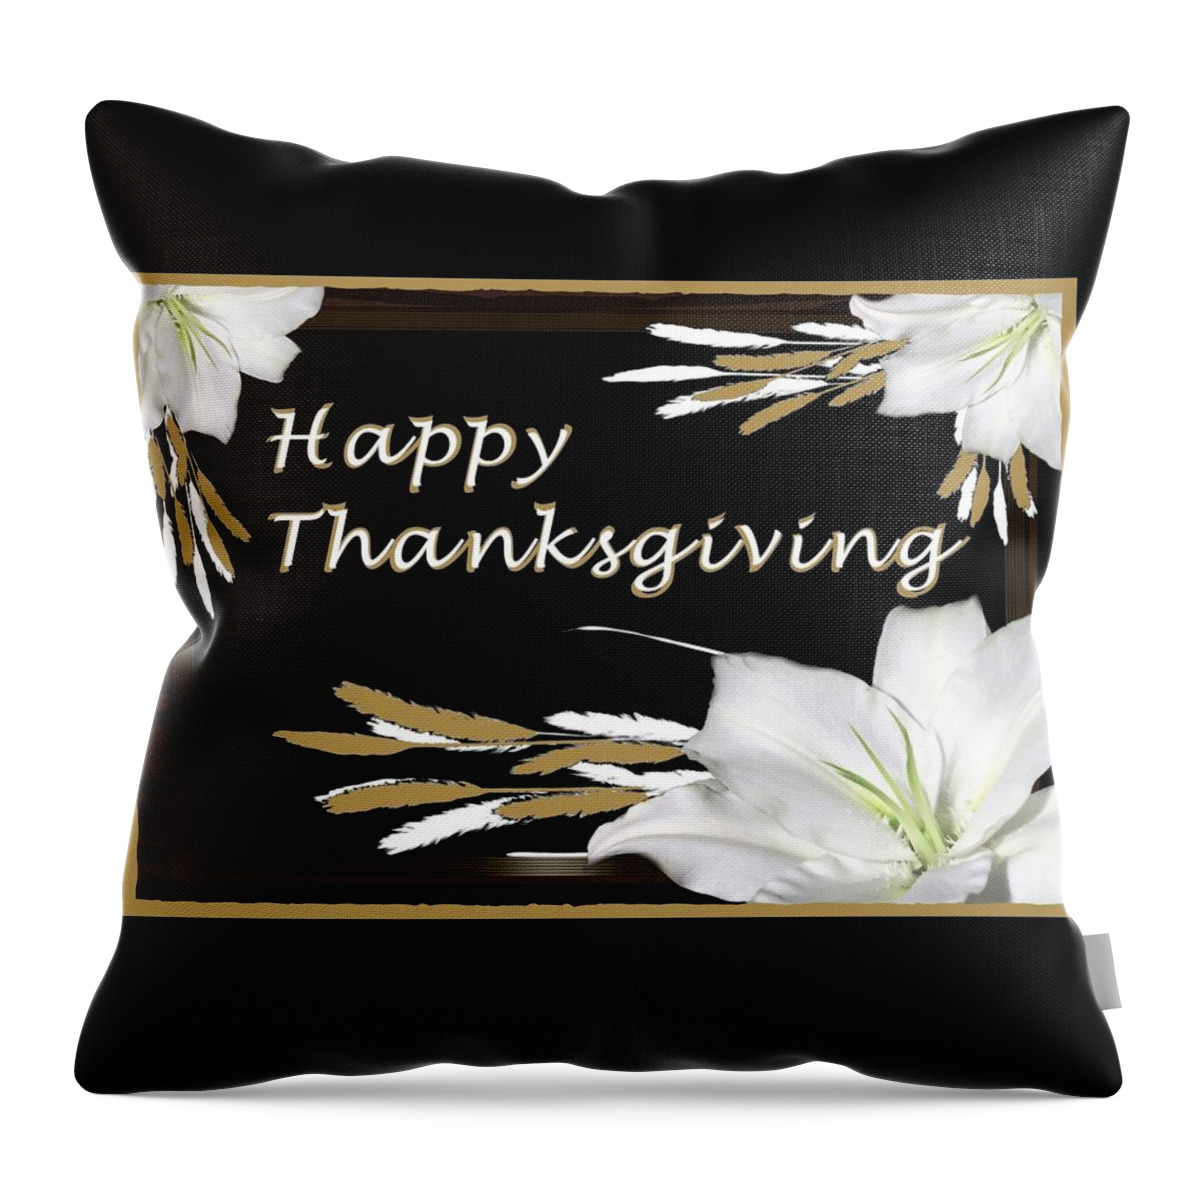 Digital Art Throw Pillow featuring the digital art Holiday Card Happy Thanksgiving by Delynn Addams by Delynn Addams